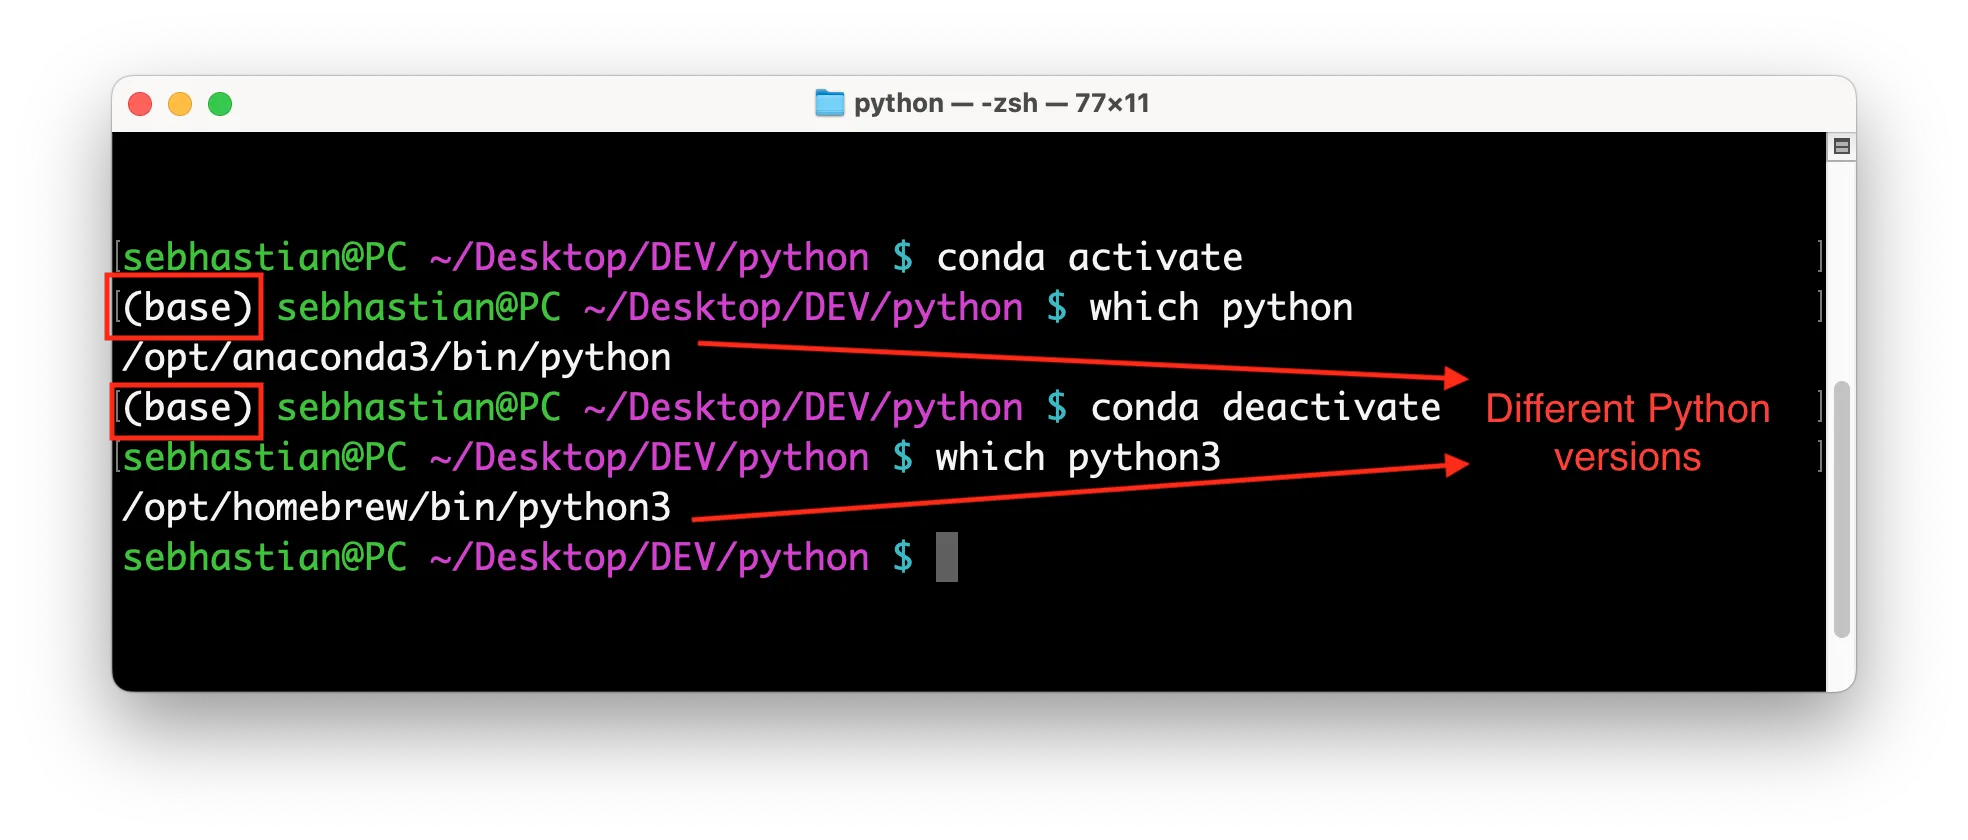 Python has an active virtual environment